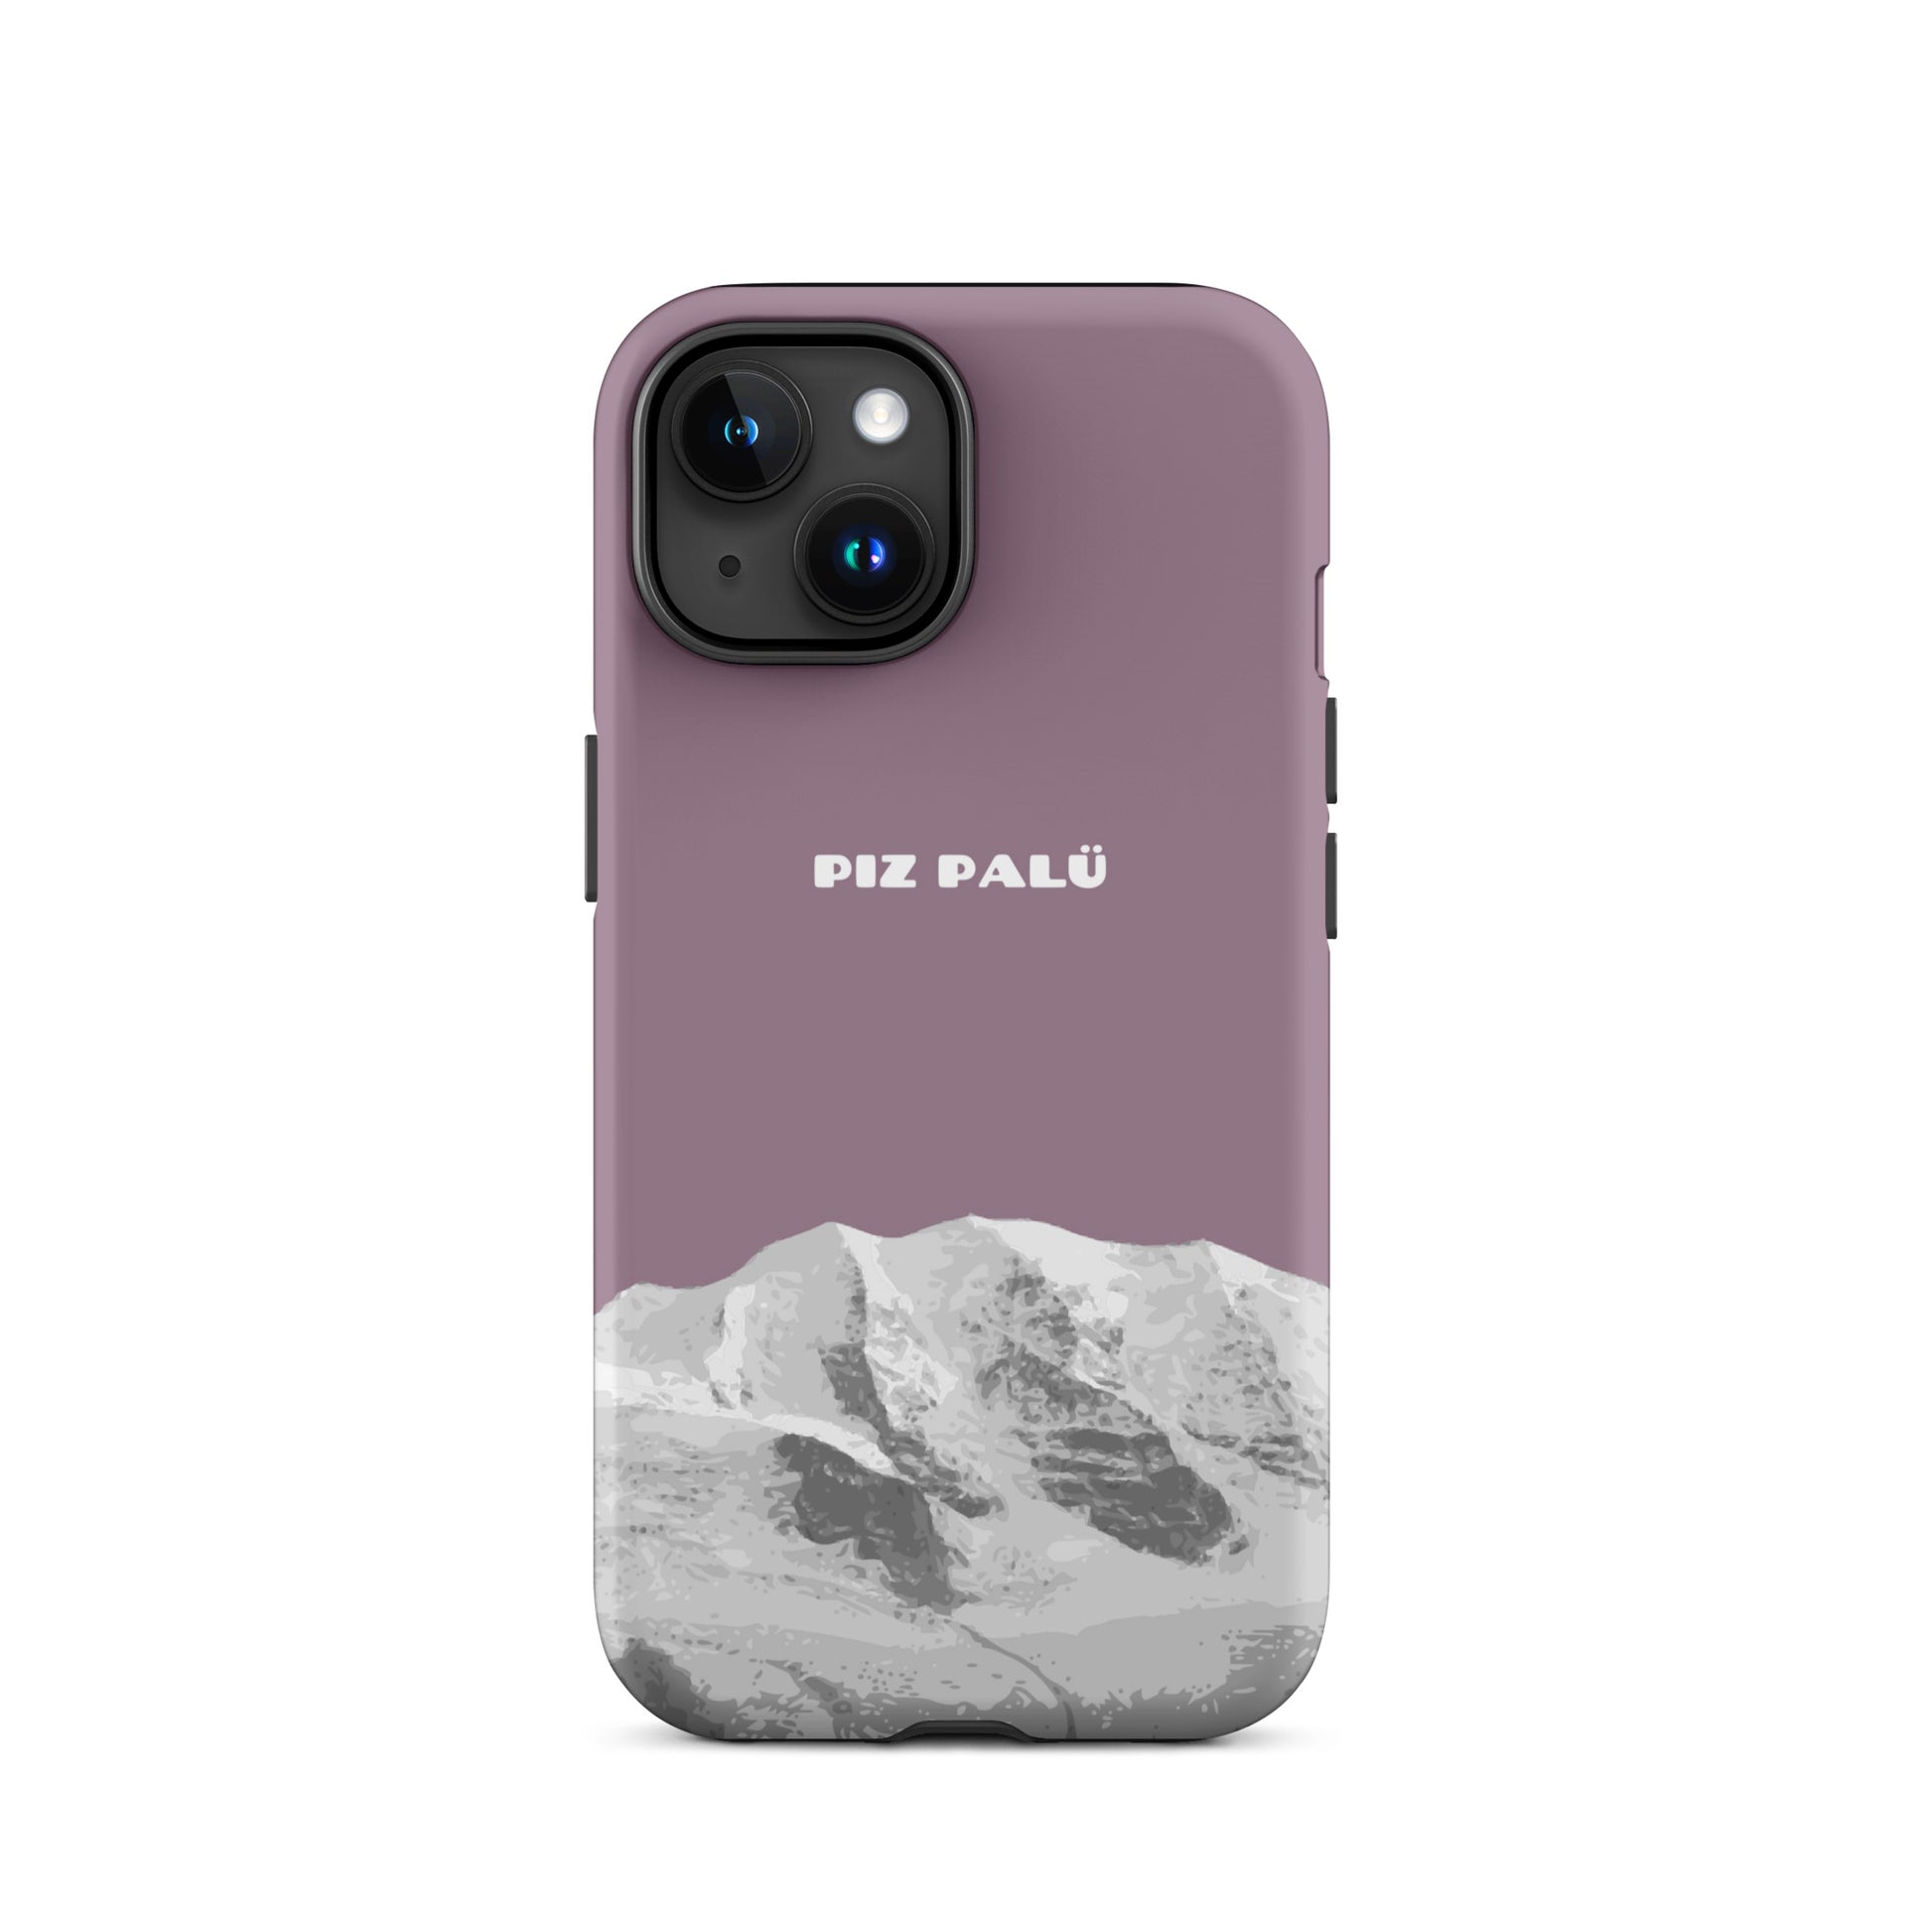 Hülle für das iPhone 15 von Apple in der Farbe Pastellviolett, dass den Piz Palü in Graubünden zeigt.